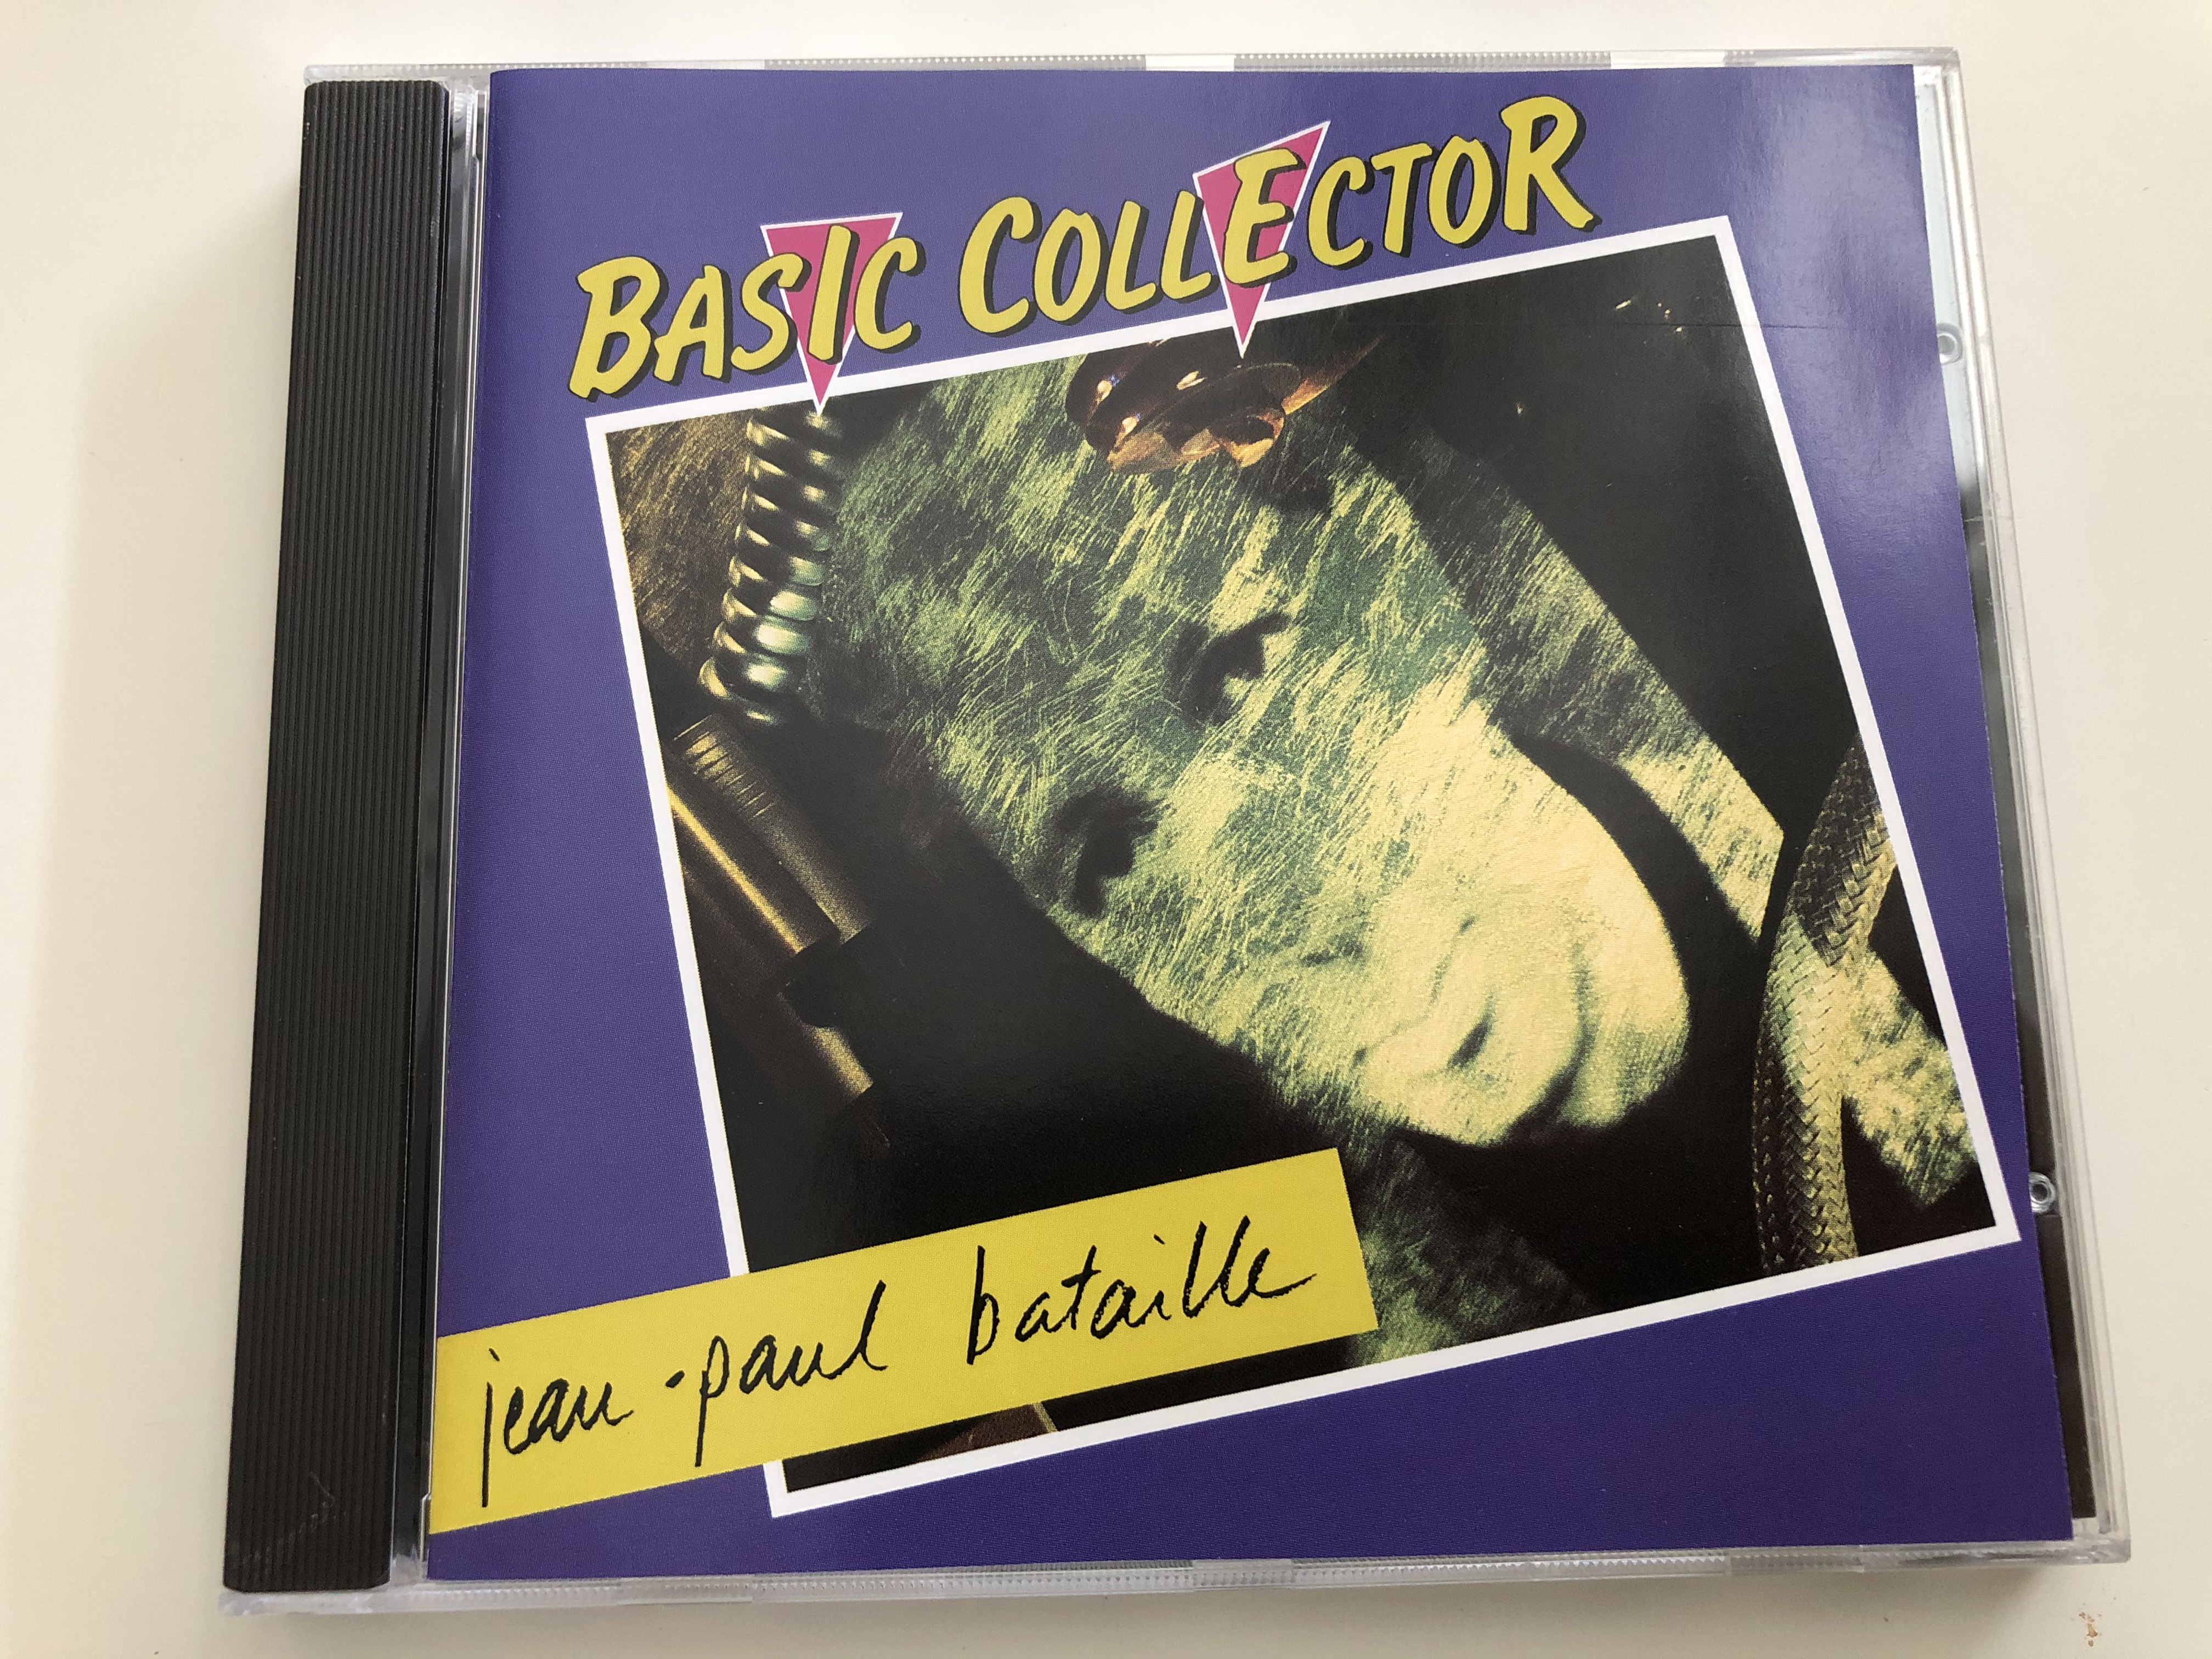 basic-collector-jean-paul-bataille-auvidis-audio-cd-1990-a-6007-1-.jpg